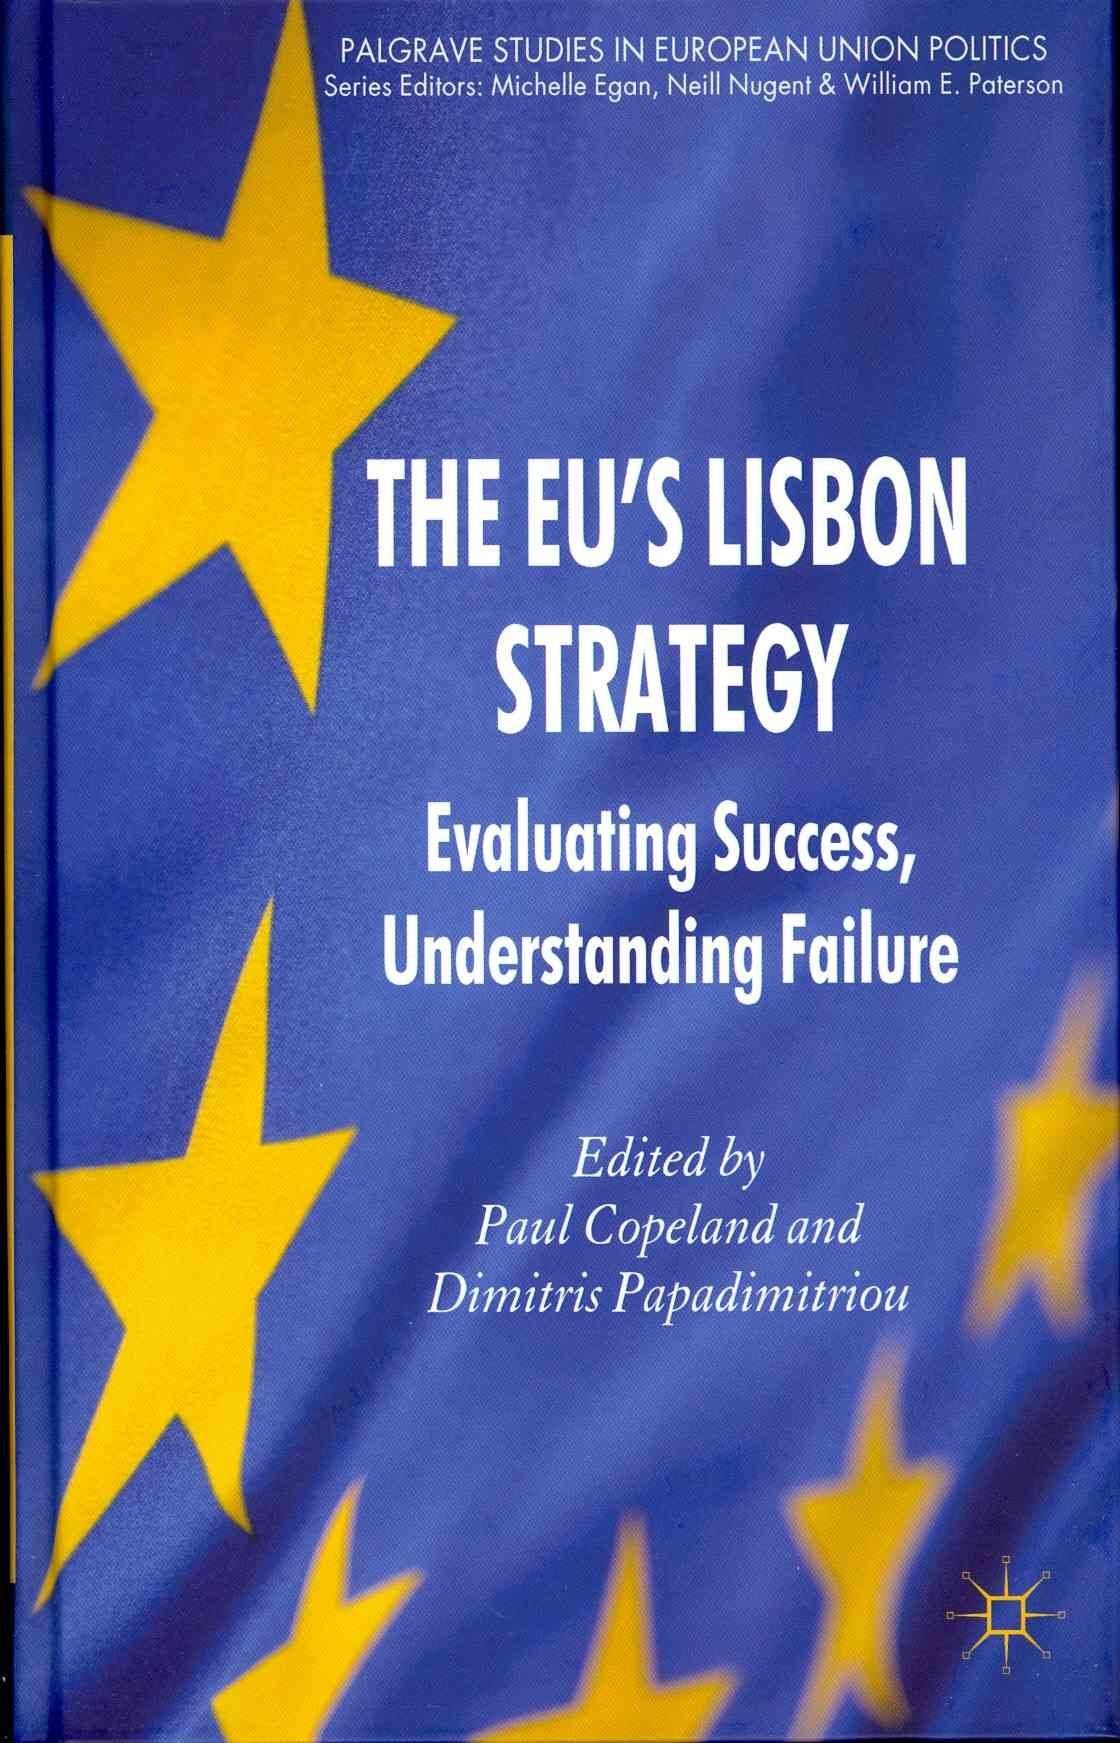 The EU's Lisbon Strategy